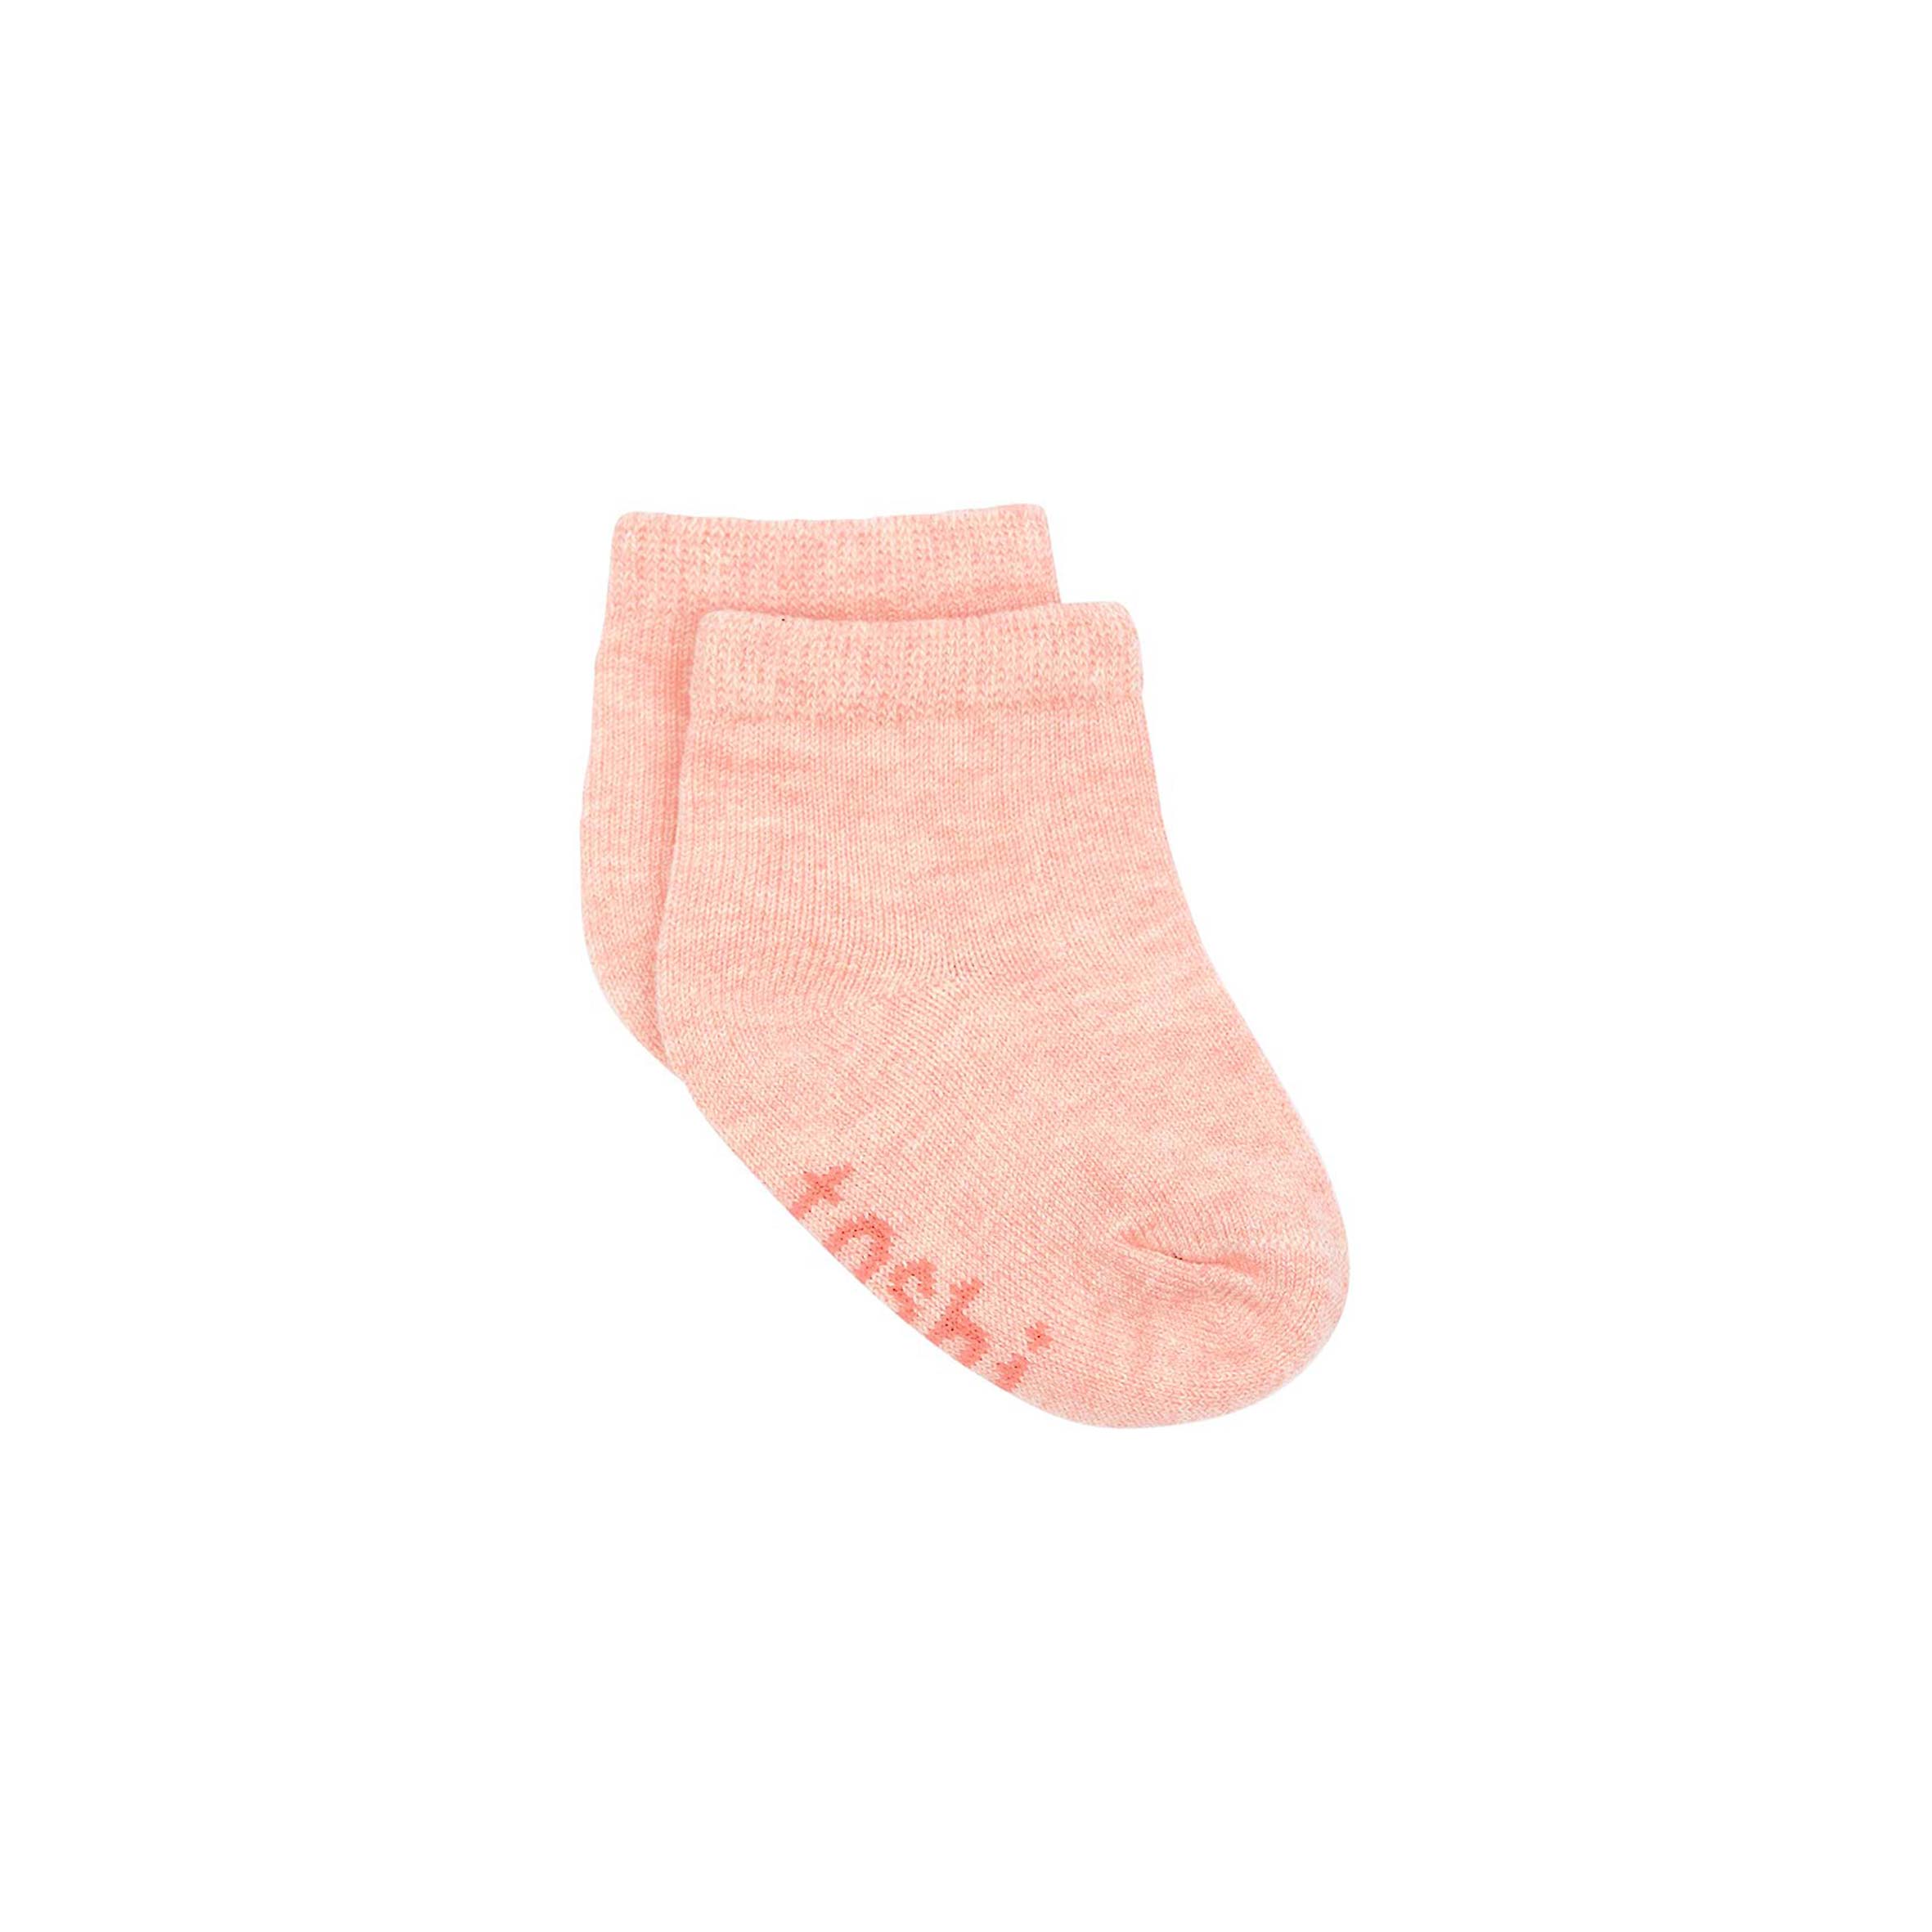 Toshi Organic Socks Ankle Dreamtime – Blossom – Maternal Instinct